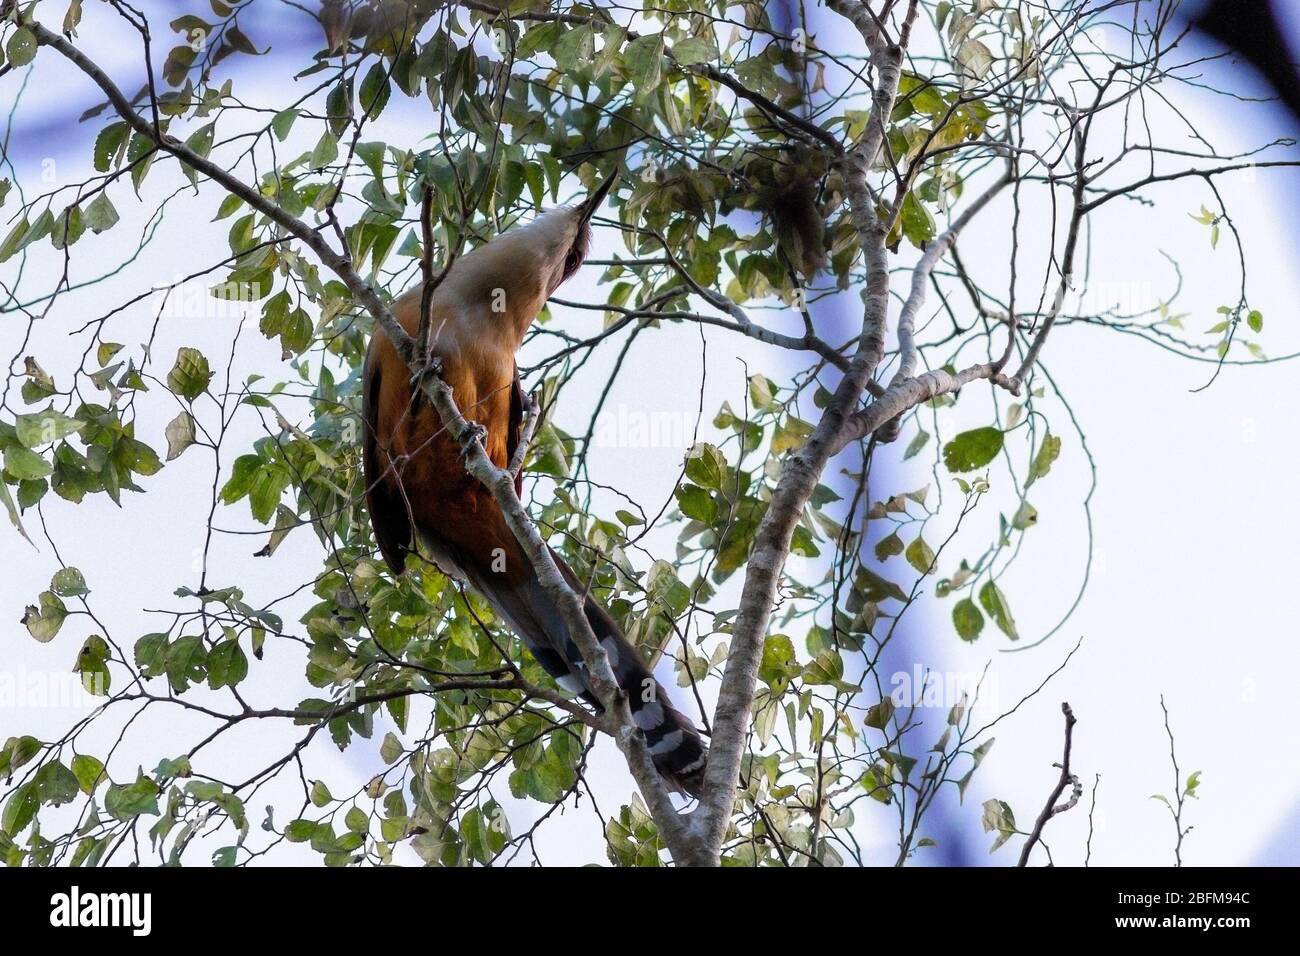 Oiseaux cuckoo de grand lézard (Coccyzus merlini) de dessous un arbre, Cuba Banque D'Images